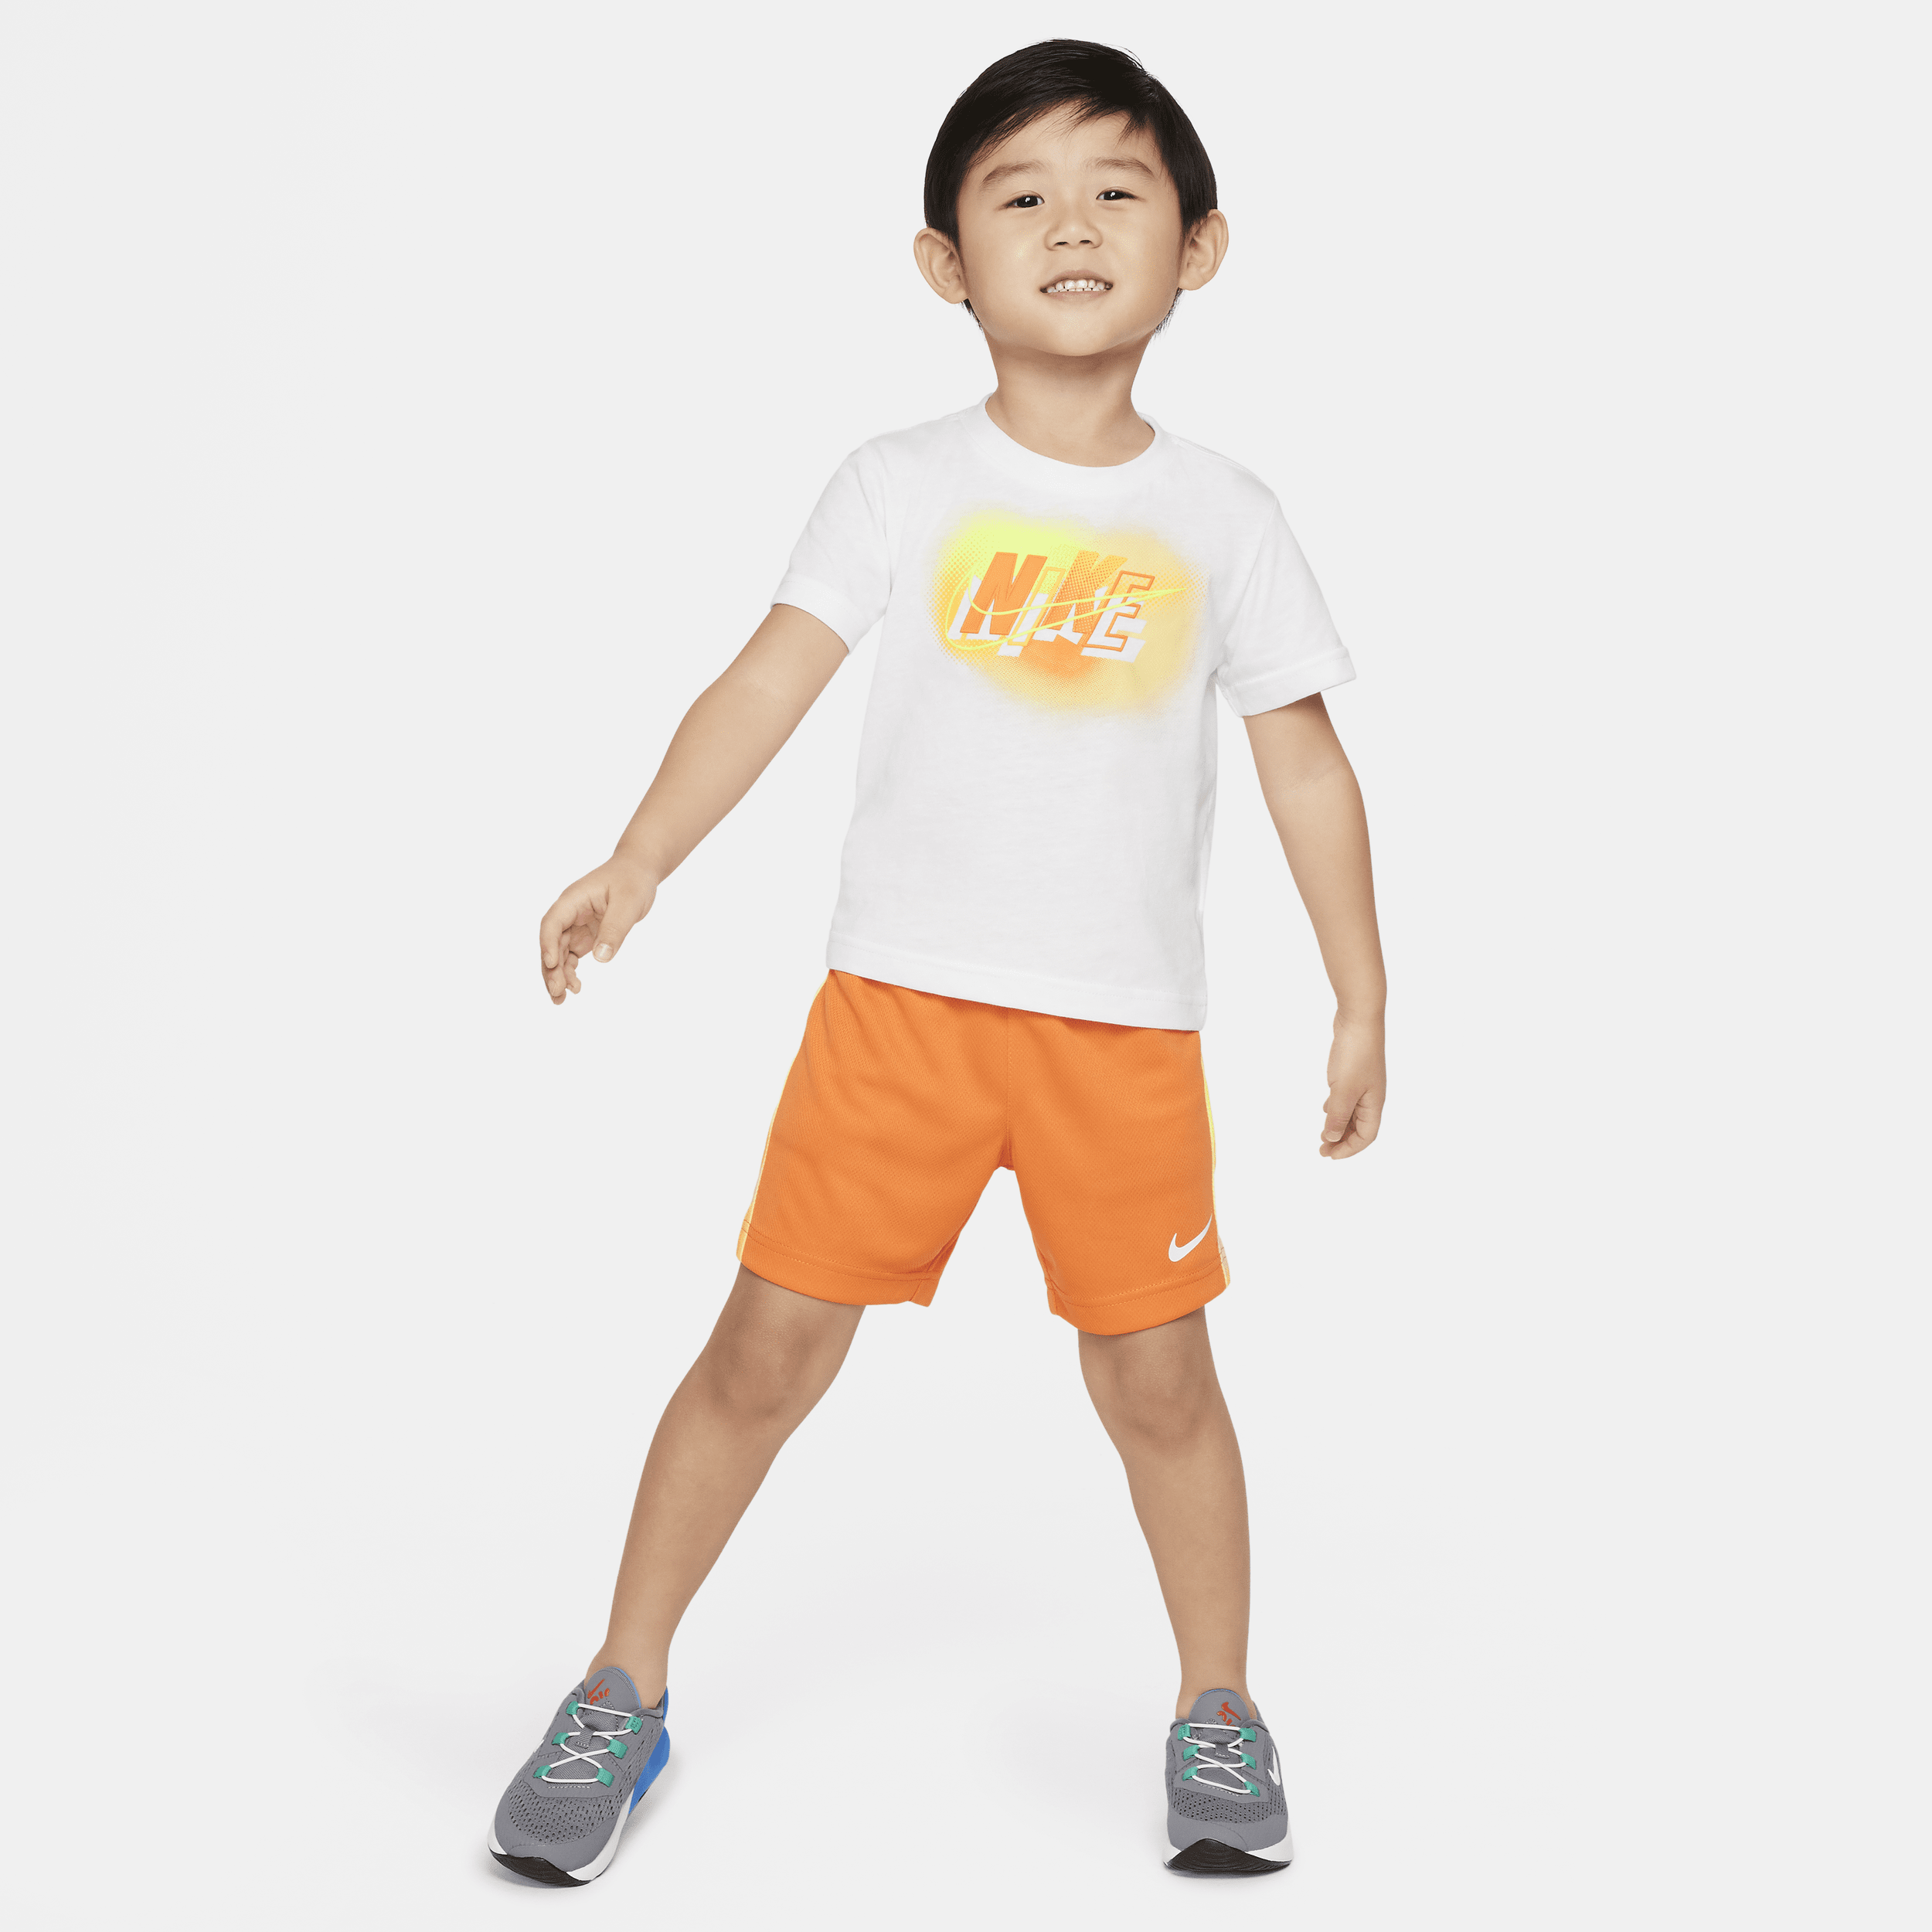 Completo con shorts Nike Hazy Rays – Bimbo/a - Arancione